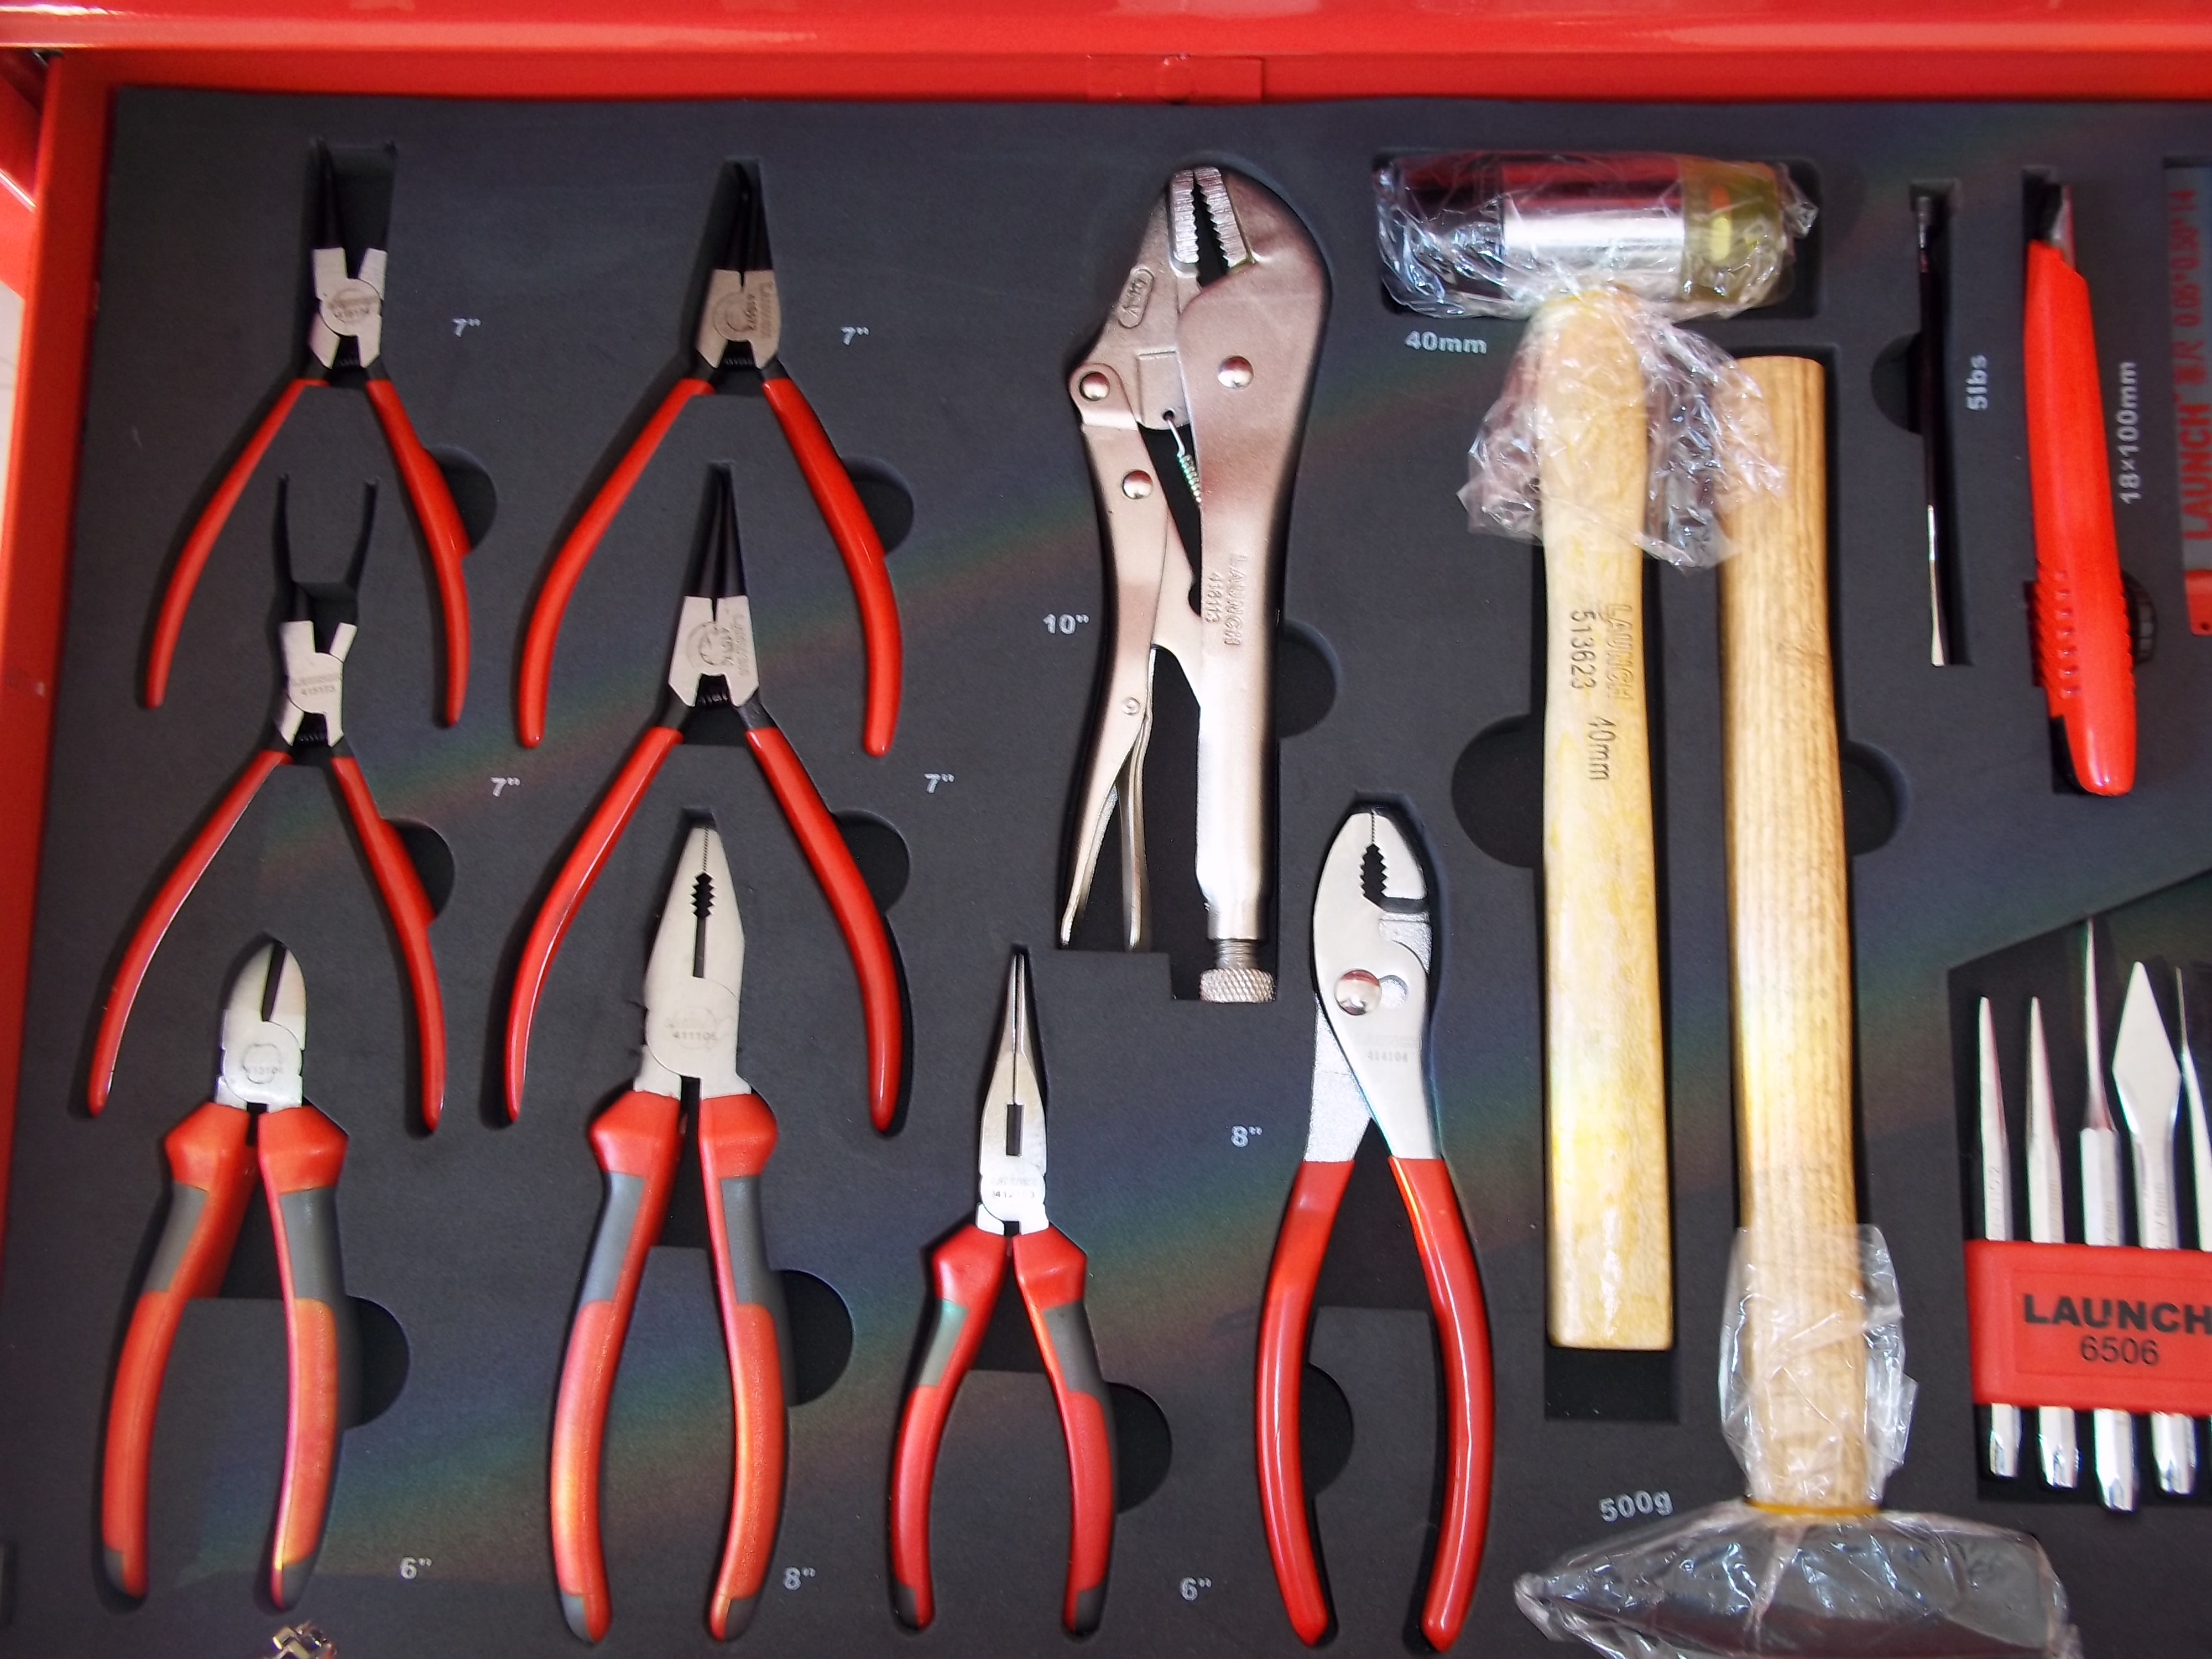 herramientas,herramientas manuales,comprar herramientas,herramientas profesionales,herramientas para taller,carro de herramientas,kit de herramientas,juego de herramientas,herramientas de taller,herramientas taller,herramientas de taller mecanico,herramientas automotrices,venta de herramientas para taller mecanico ,catalogo de herramientas,herramientas de automocion,precios de herramientas,herramientas tools,ofertas herramientas,catalogos de herramientas,